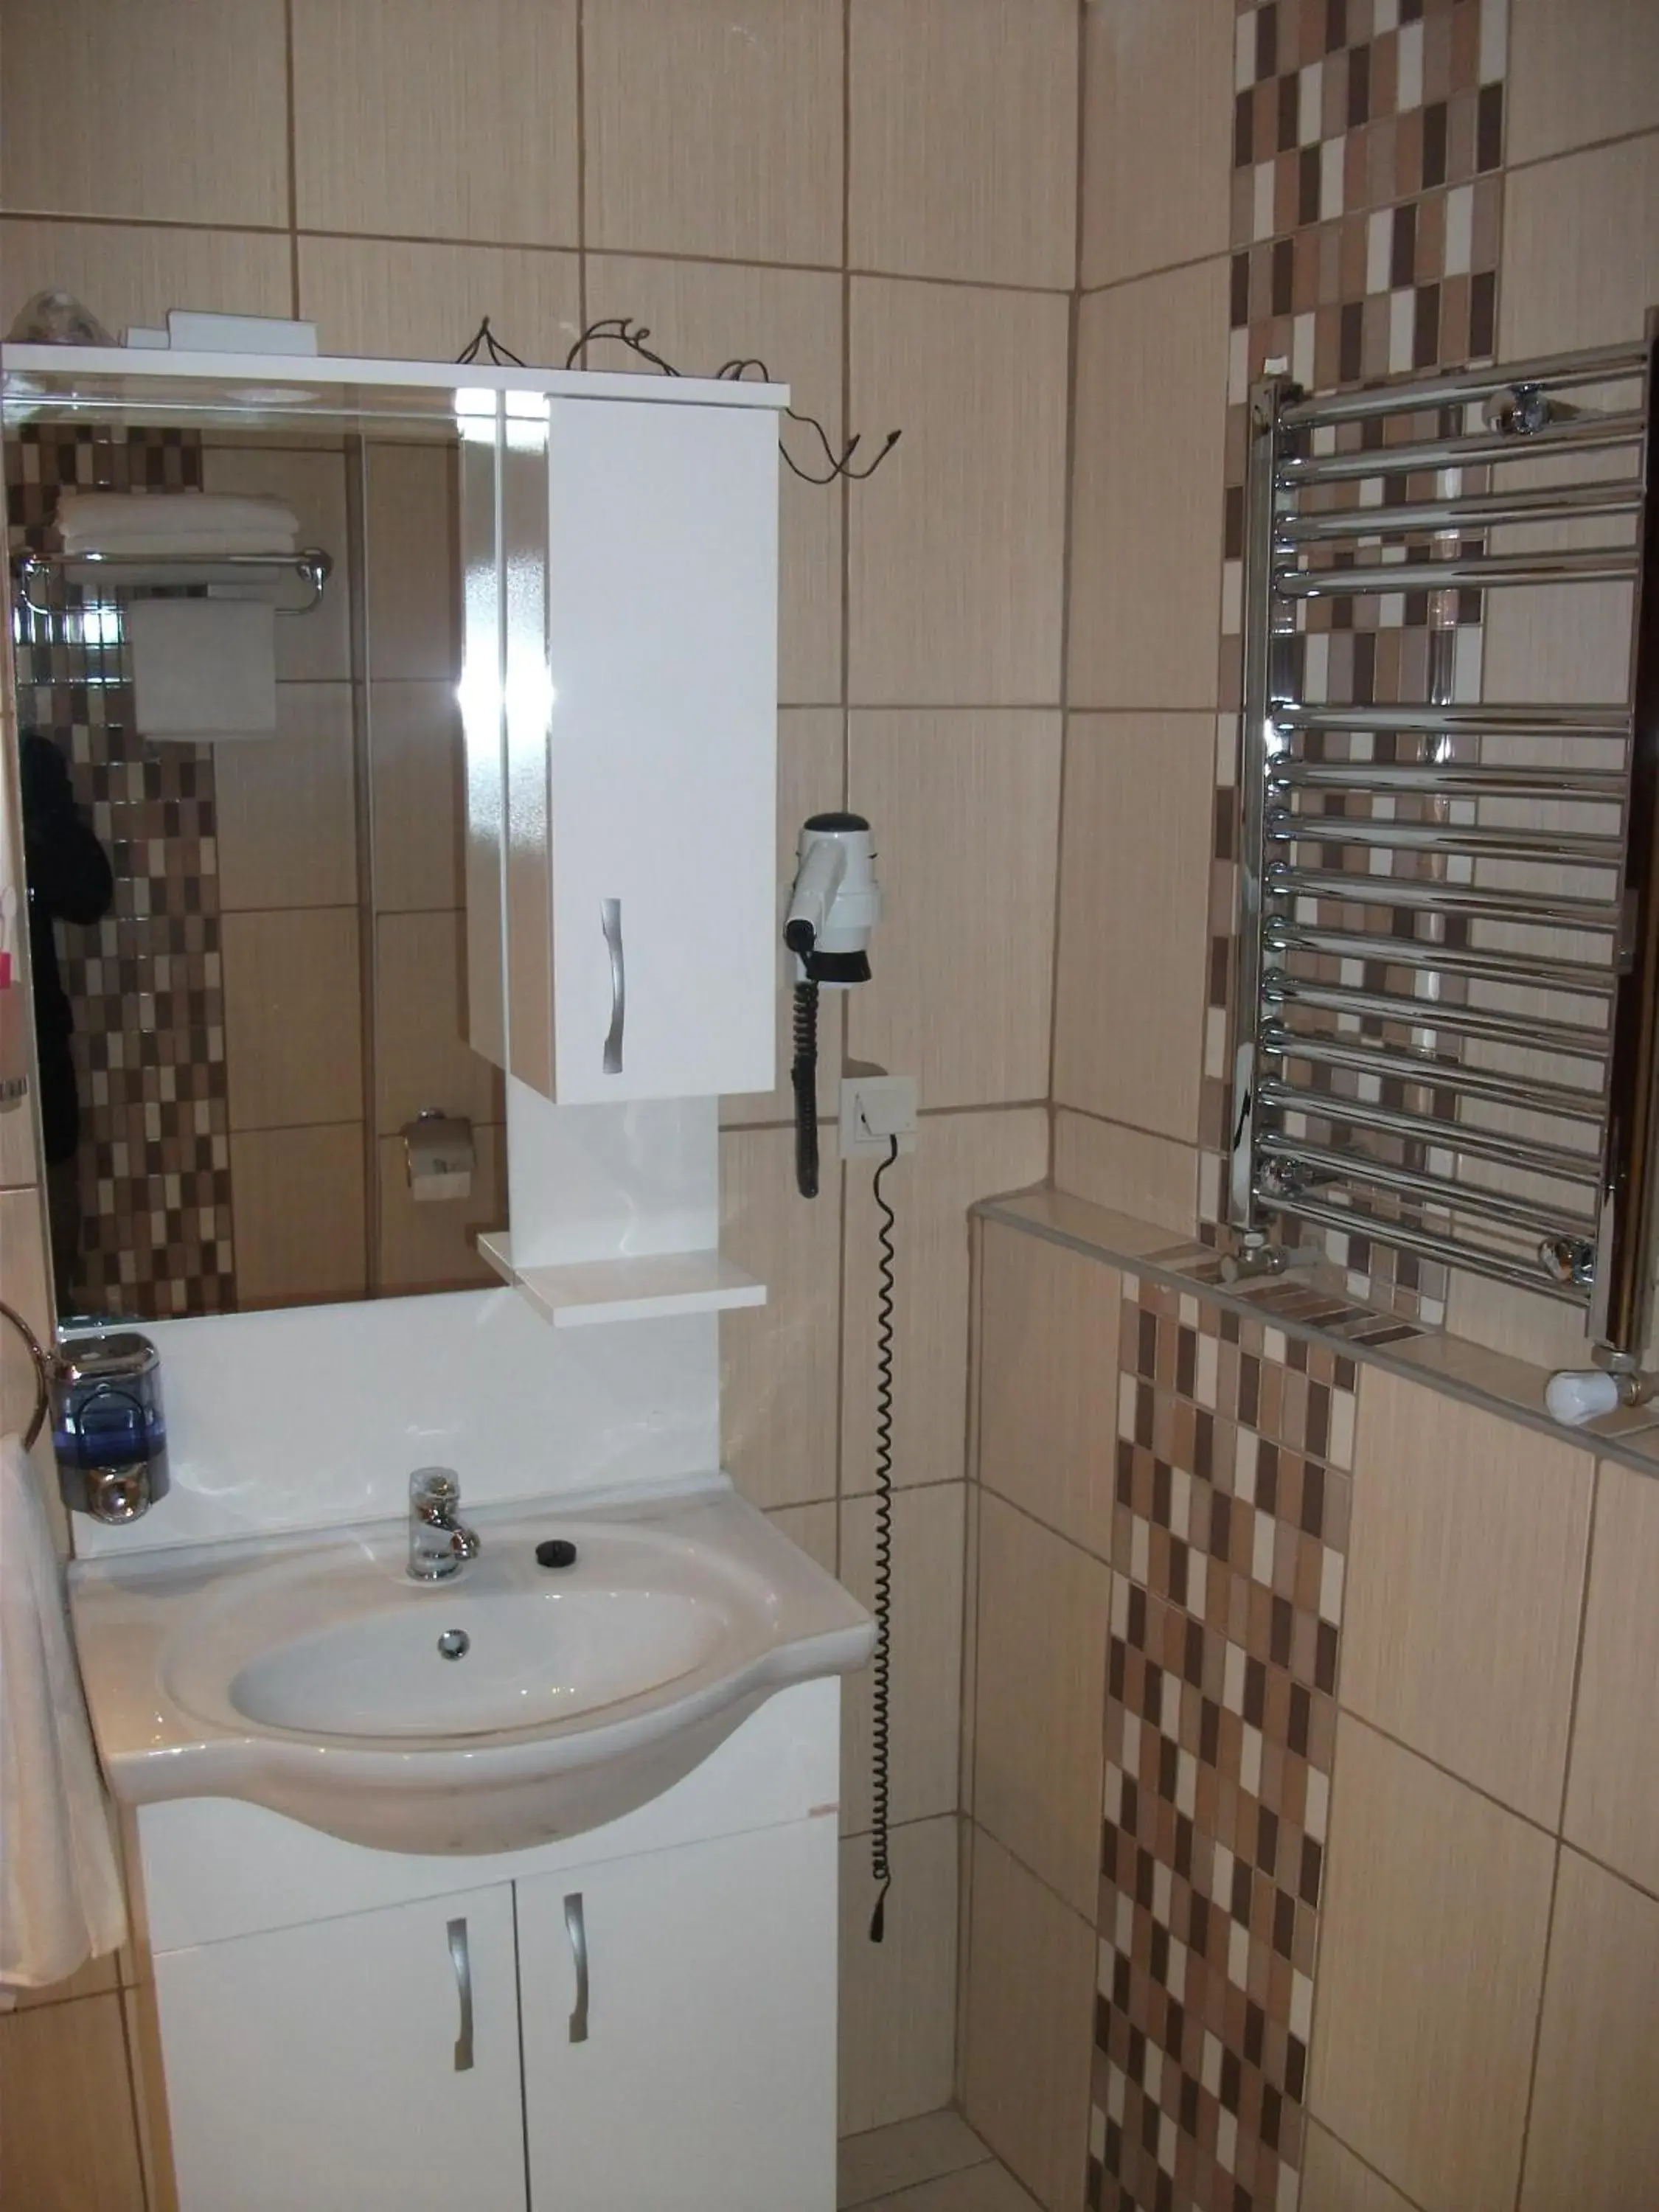 Bathroom in Sultan Palace Hotel